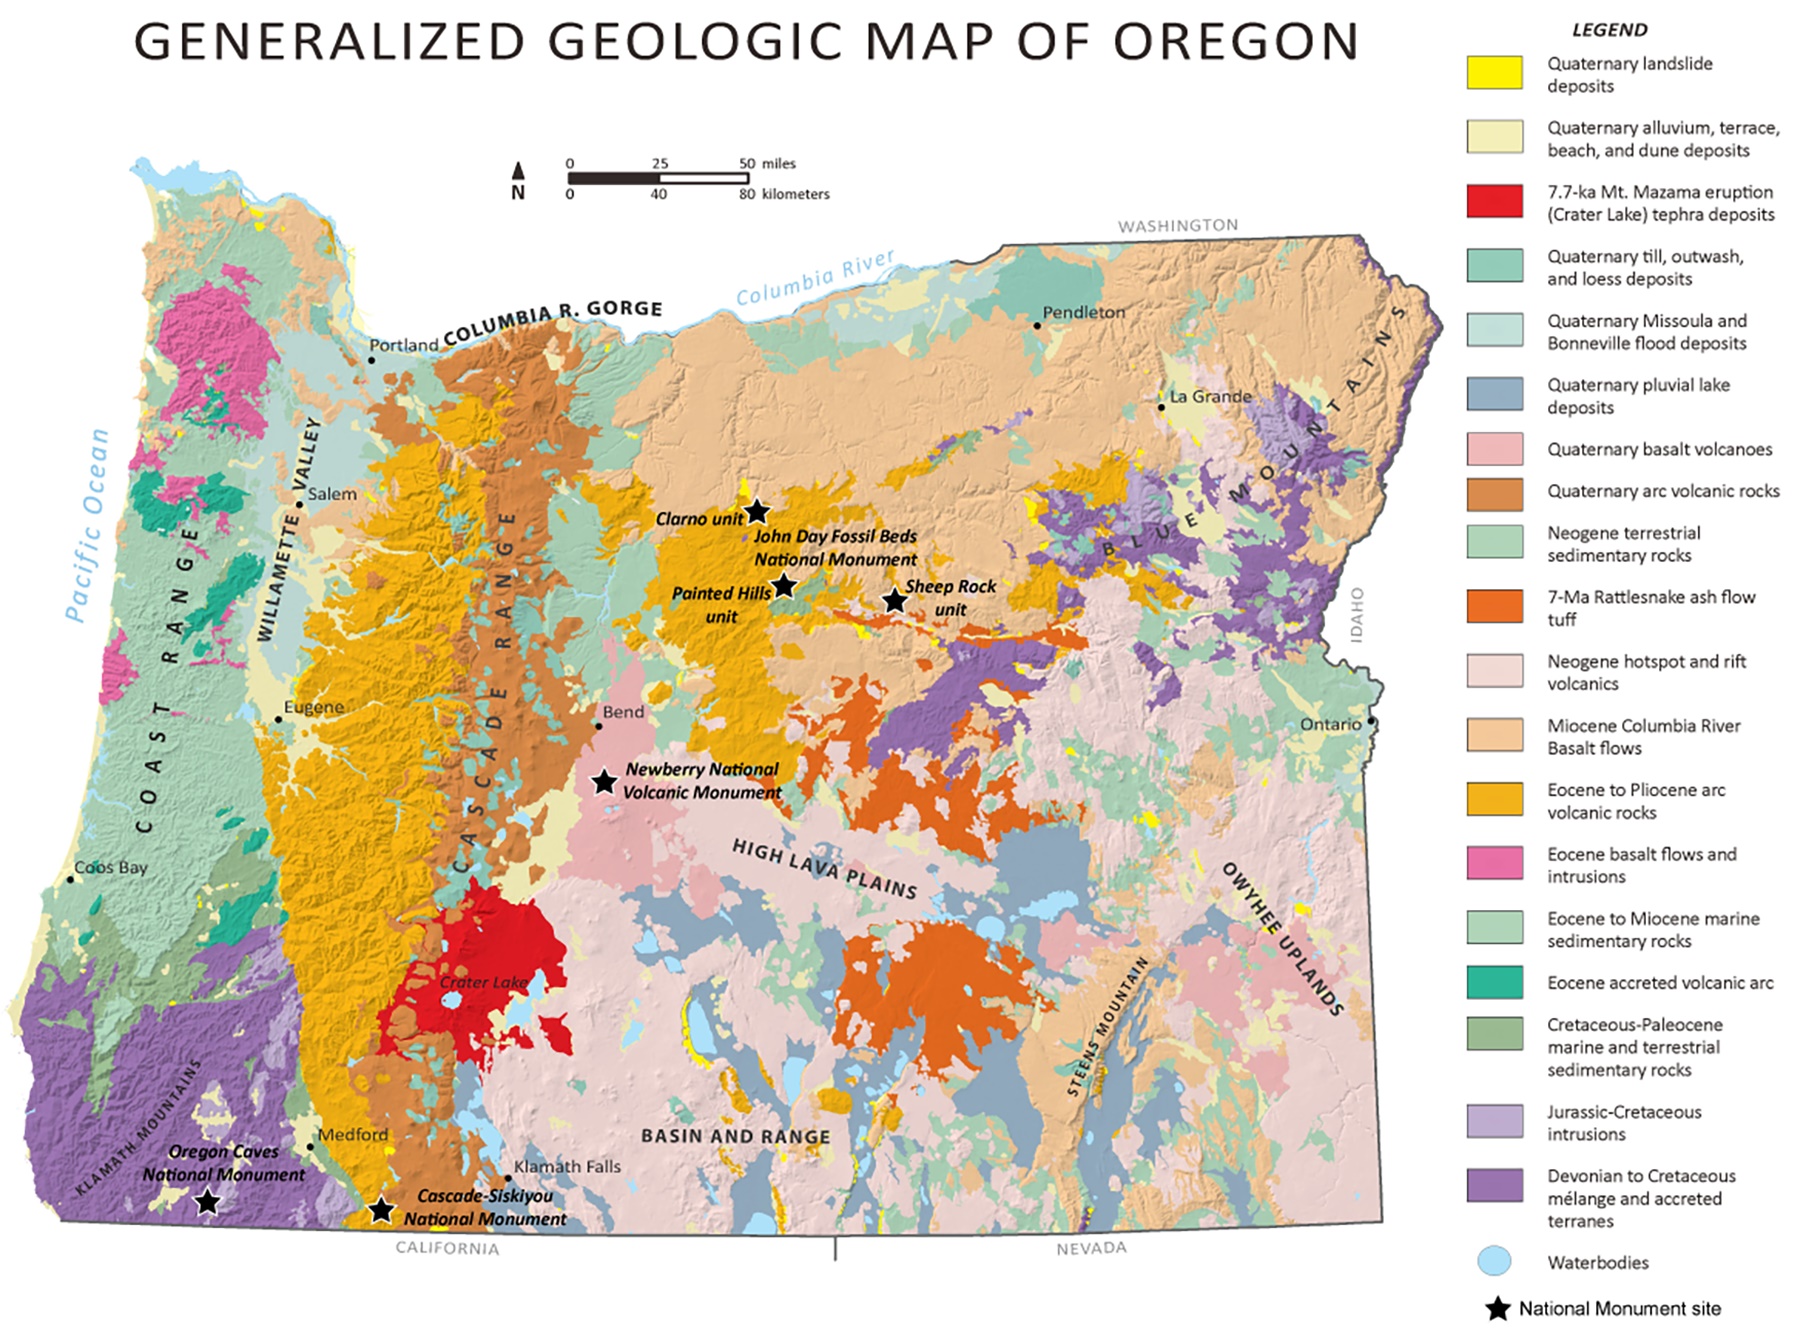 Generalized geologic map of oregon shows landslide deposits, flood deposits, terrestrial sedimentary rocks, volcanic rocks